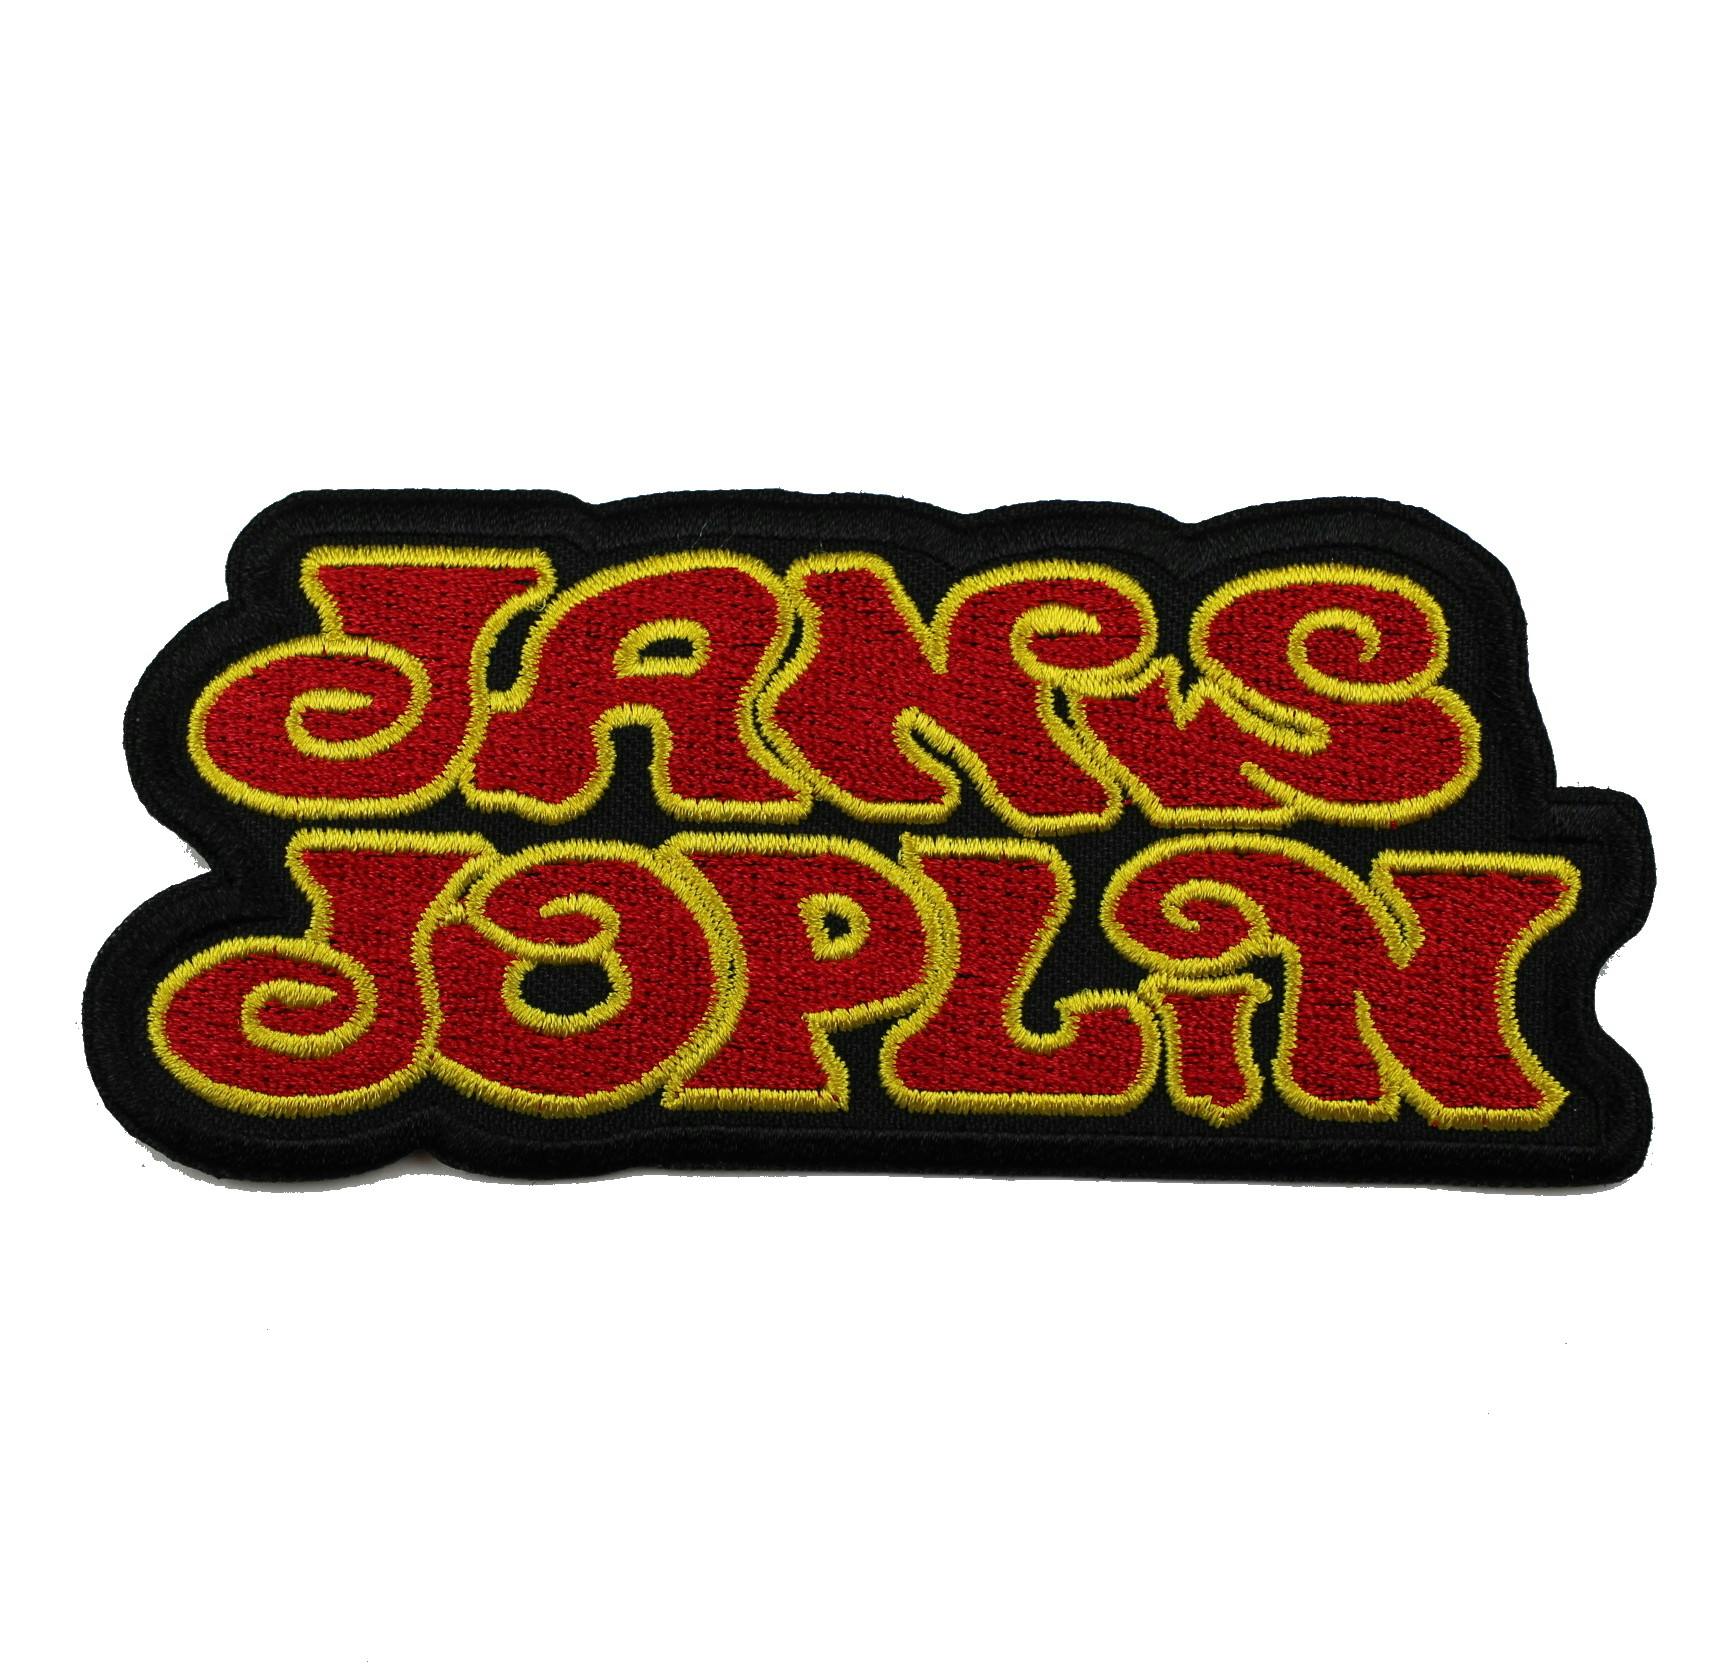 Janis Joplin logo patch